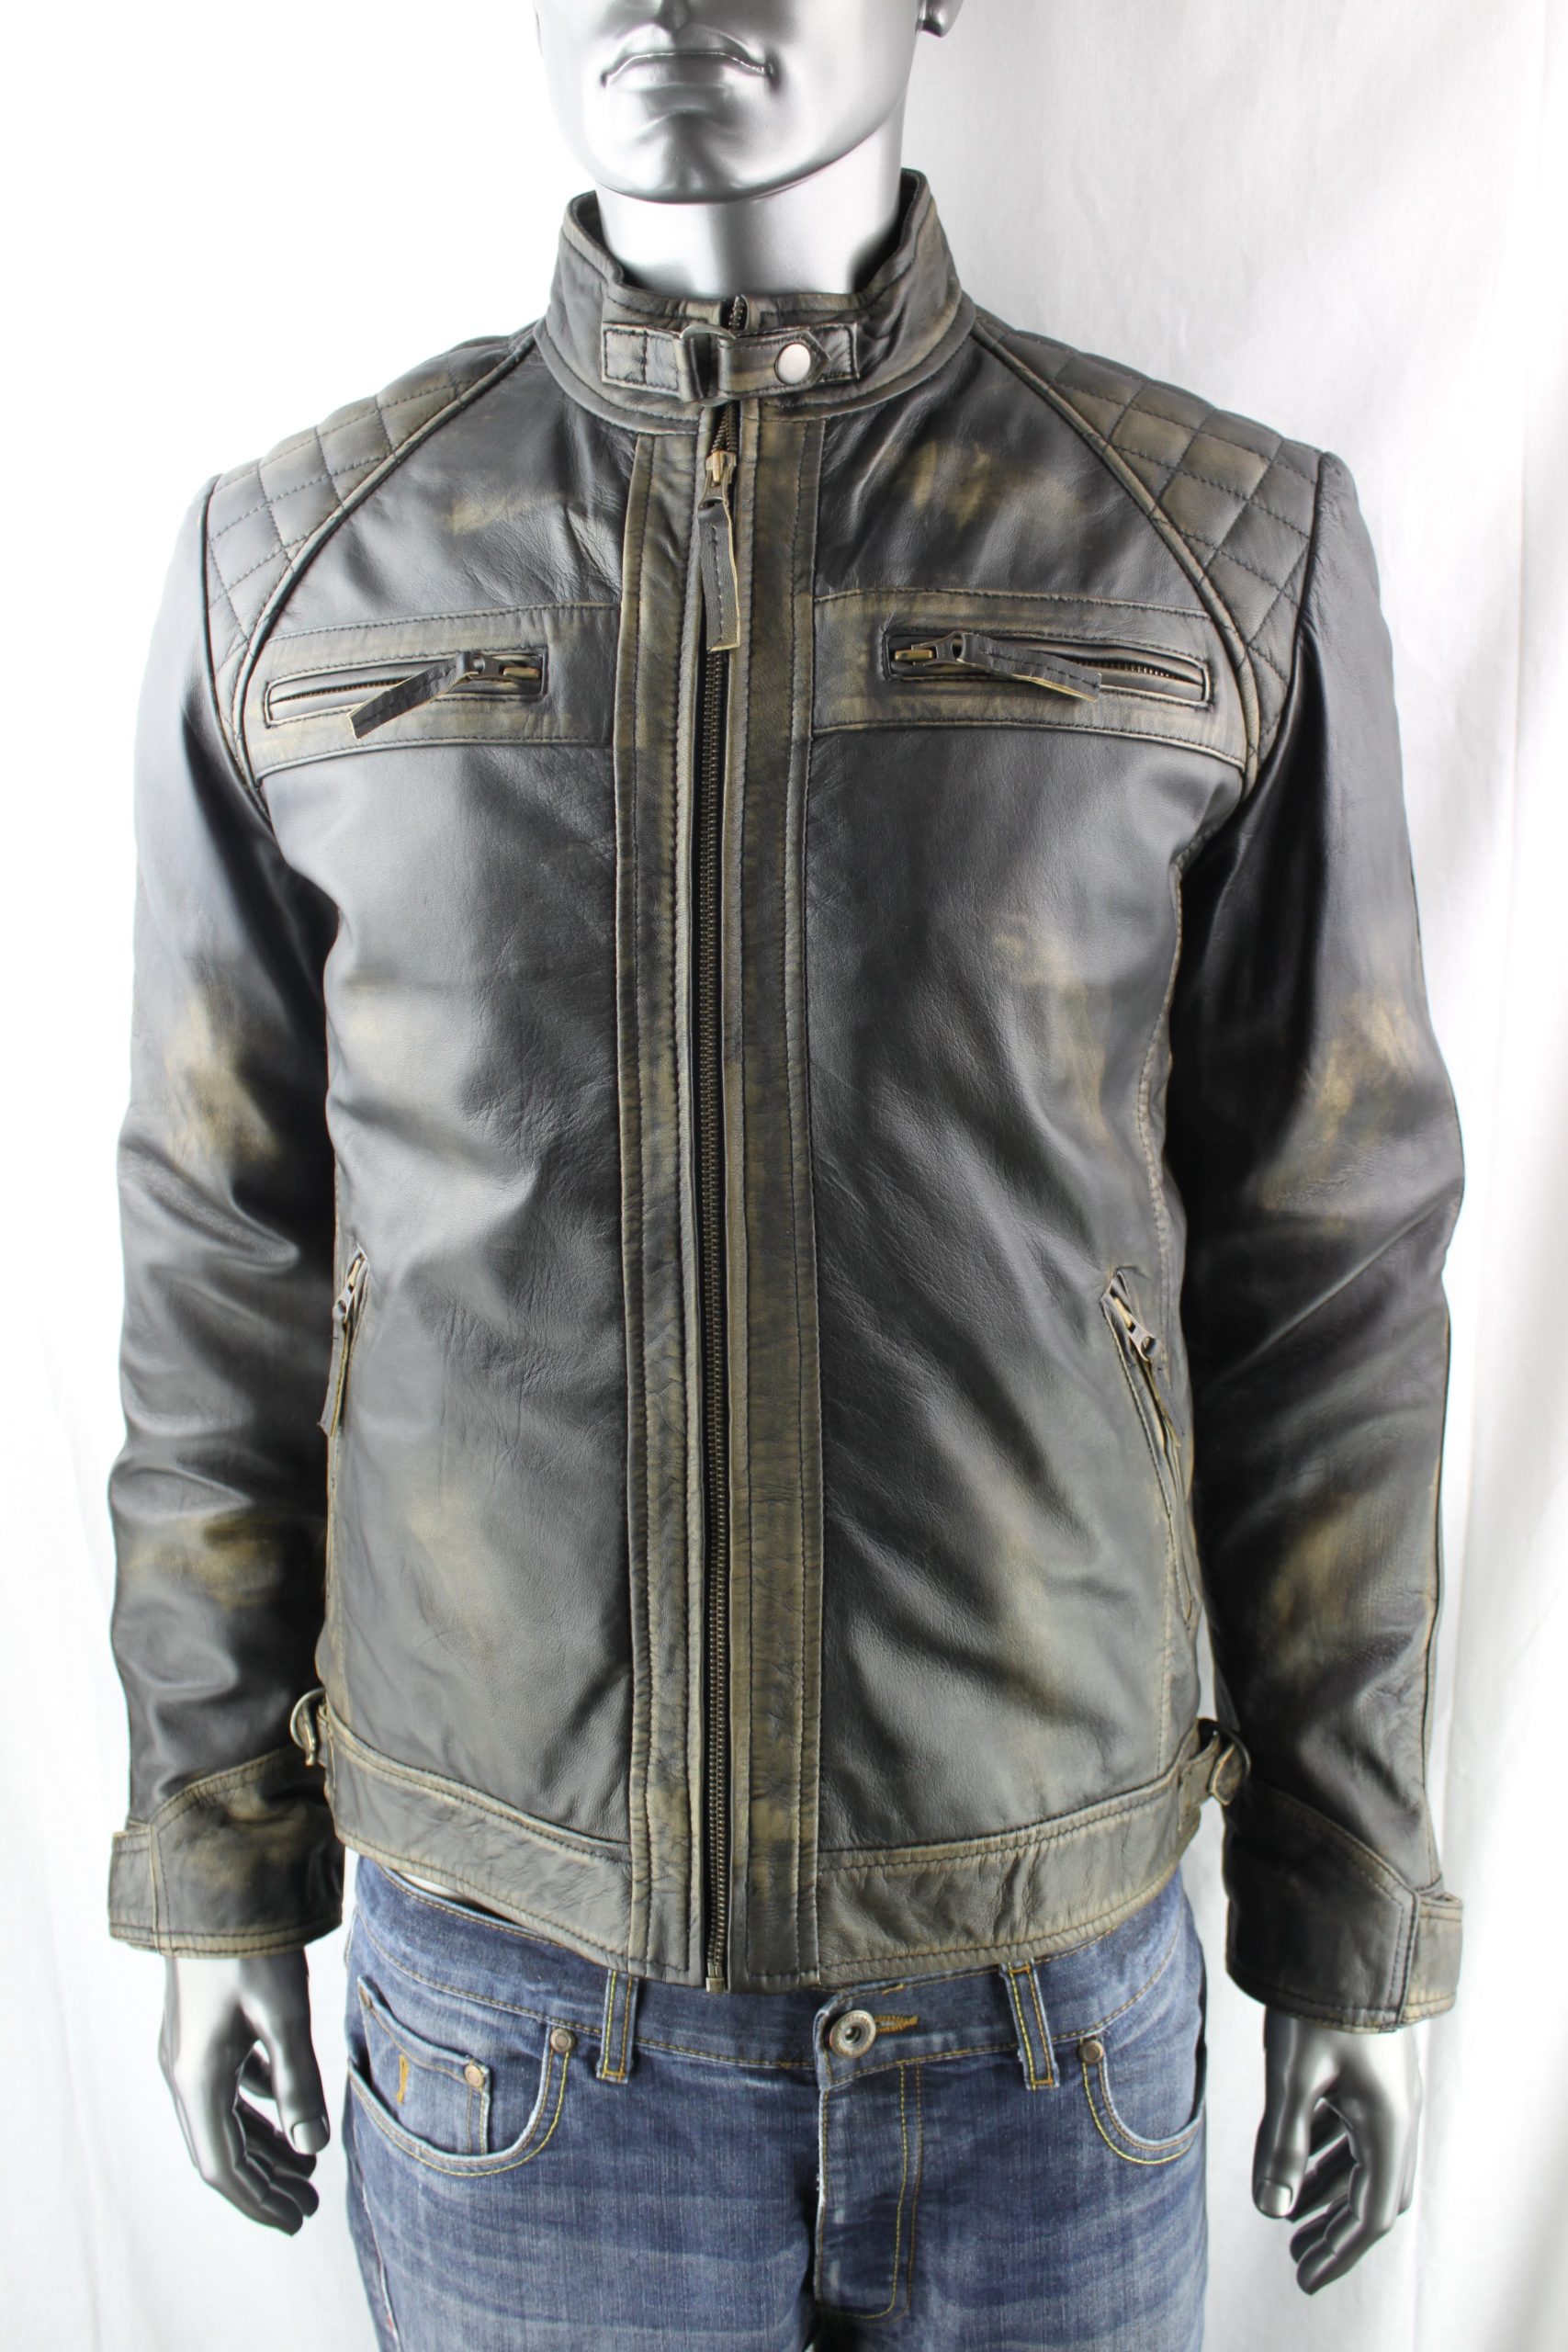 Men's Vintage Leather Biker Jacket in Black Rub Off – Radford